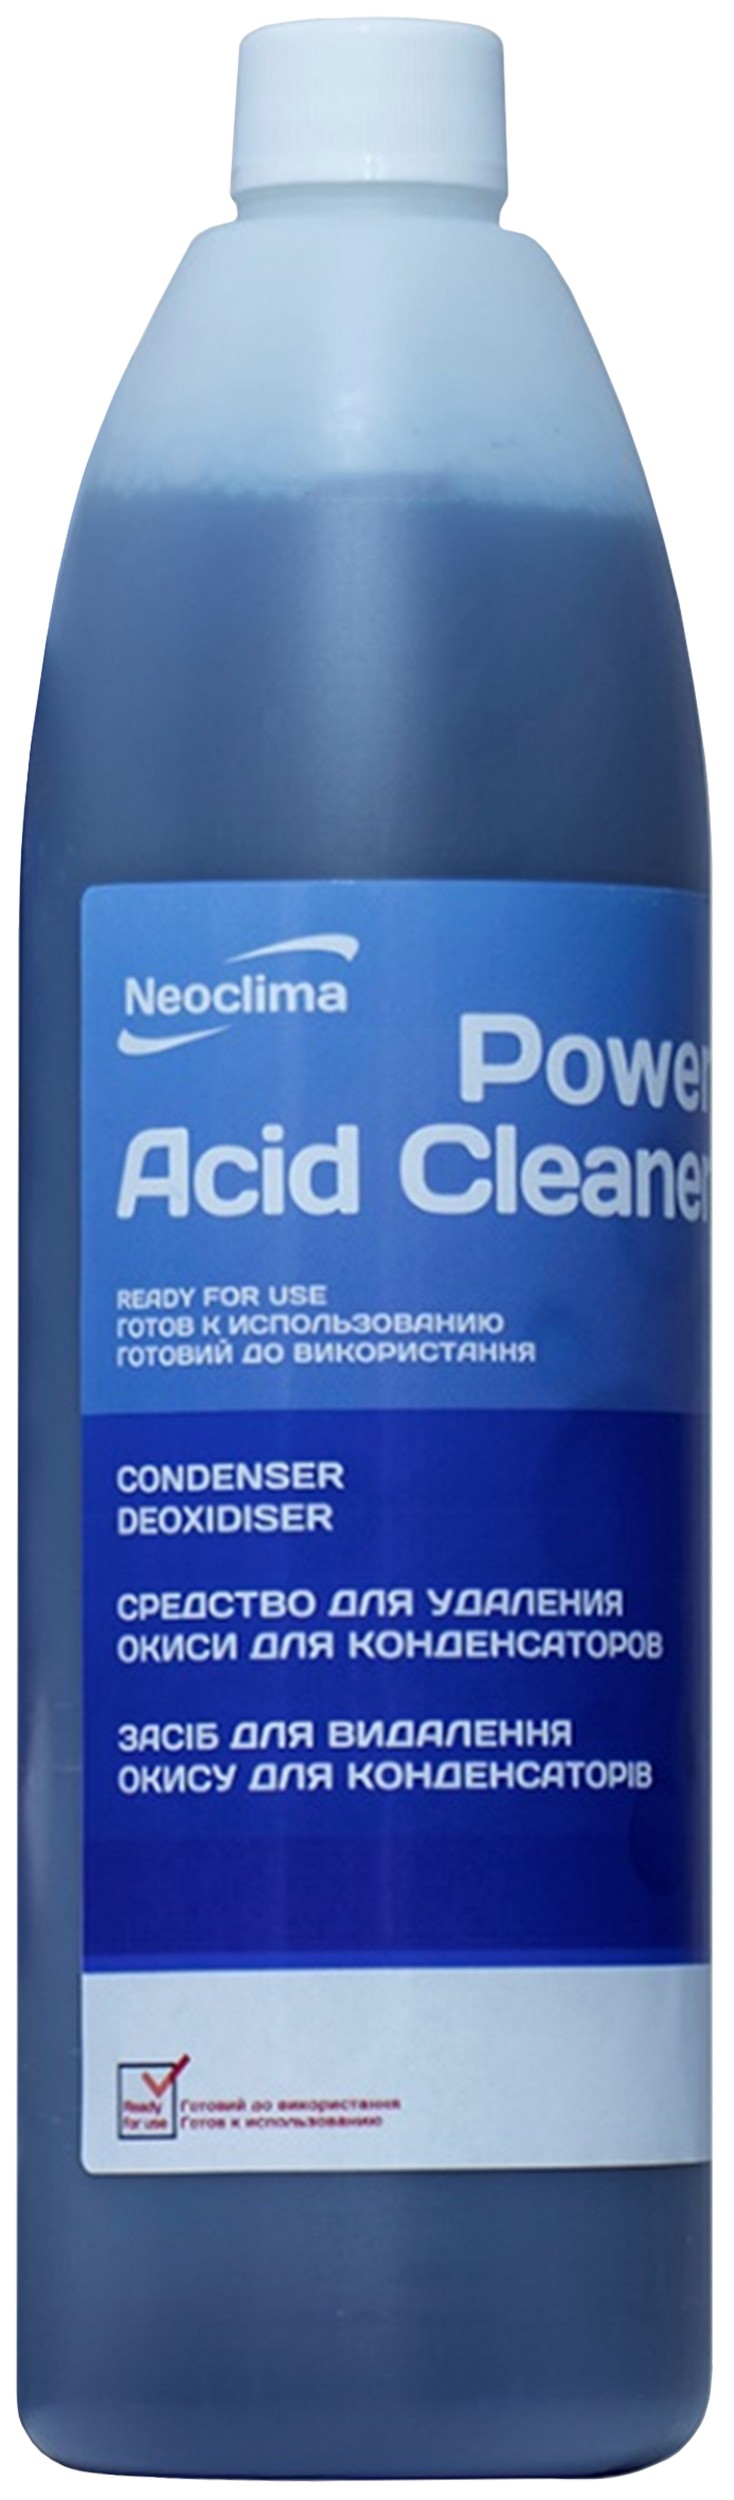 Очиститель внешнего блока Neoclima Power Acid Cleaner 1 л, спрей в интернет-магазине, главное фото